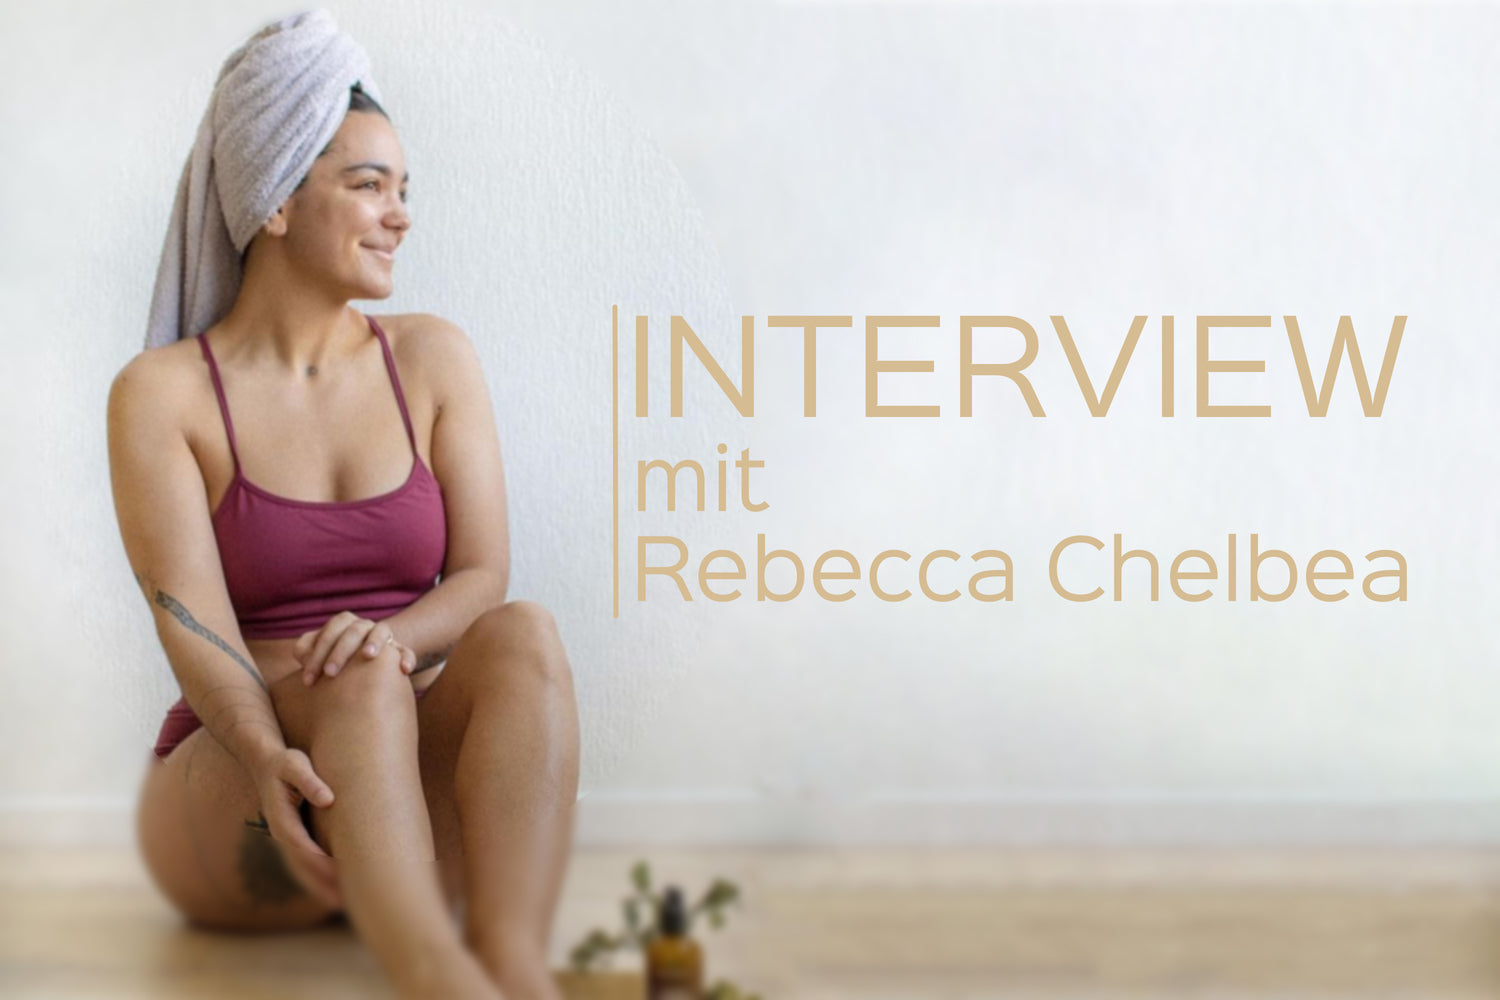 Special Guest: Rebecca Chelbea - Wie die Influencerin andere zu mehr Selbstliebe inspiriert